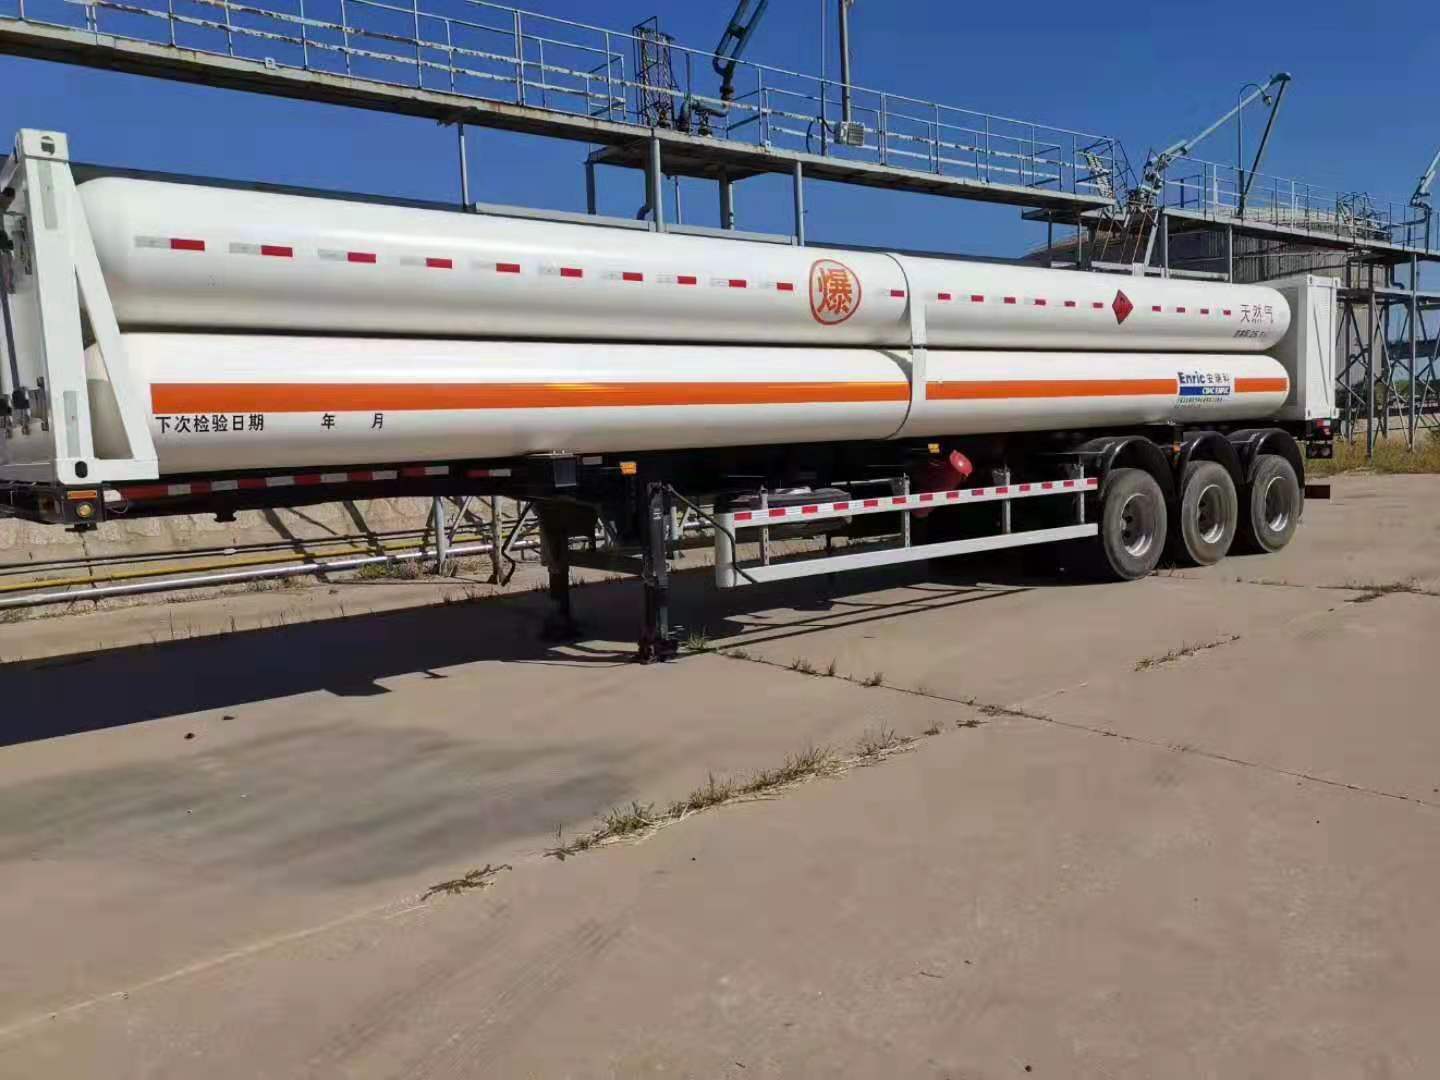 出售二手CNG6管天然气运输车 安瑞科6管天然气运输